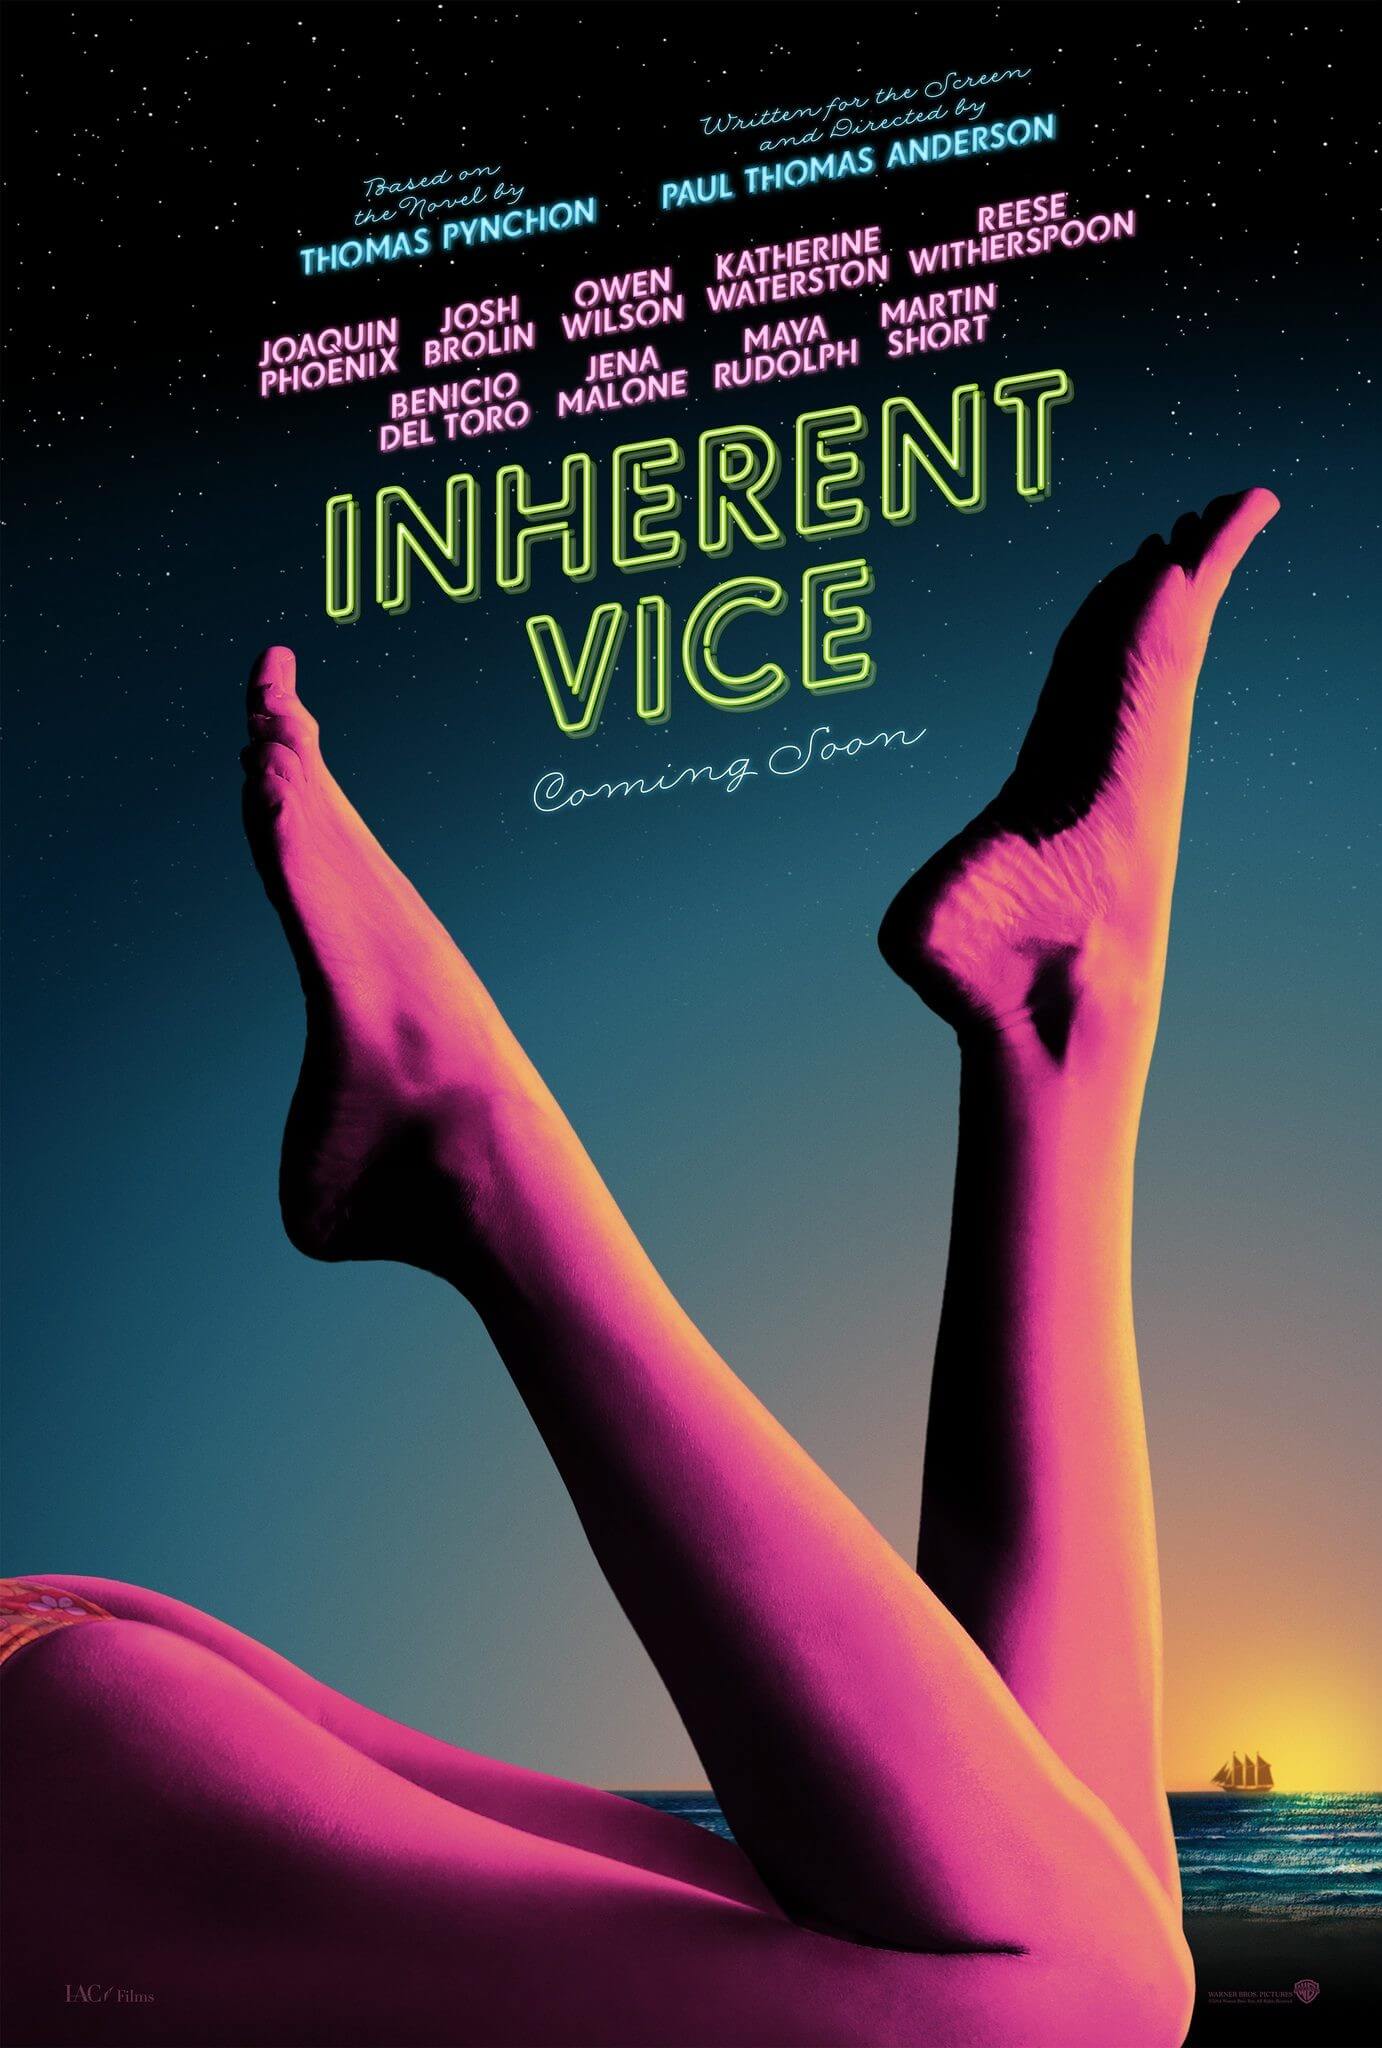 Inherent Vice – Natürliche Mängel. Dieser Film ist teils Surf noir, teils psychedelische Farce, aber ganz Thomas Pynchon. Wenn ihr sehen wollt, wie Doc Ende der psychedelischen 1960er-Jahre mit der Liebe und ihren unausweichlichen Problemen umgeht, dann solltet ihr euch diesen Film im zeise Open Air nicht entgehen lassen.